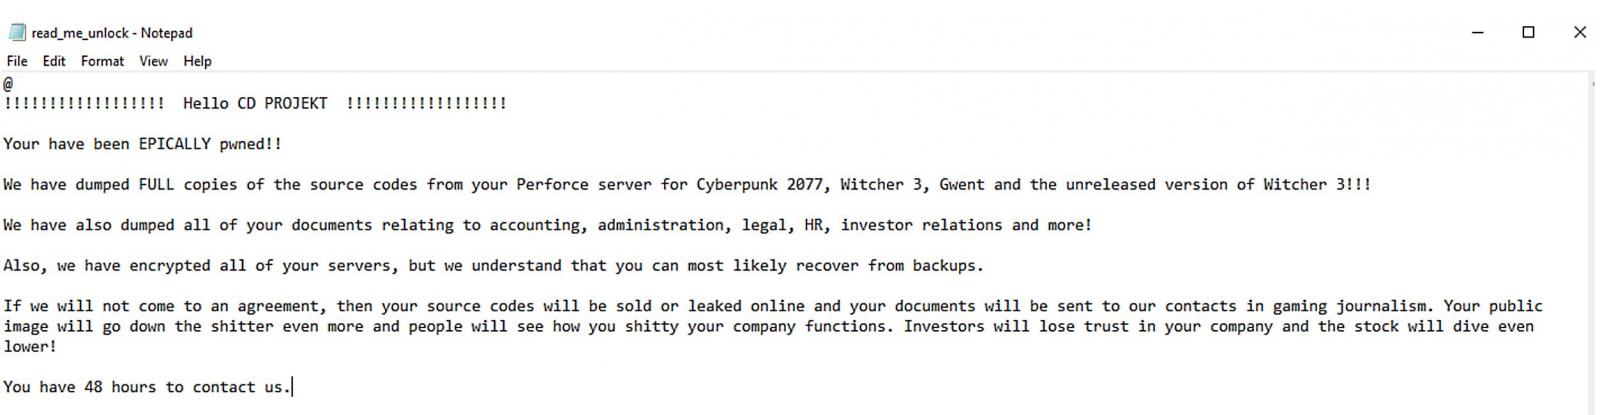 Η εταιρεία CD PROJEKT RED, που έχει φτιάξει το Cyberpunk 2077, δέχθηκε επίθεση από hackers που ζητάνε λύτρα!